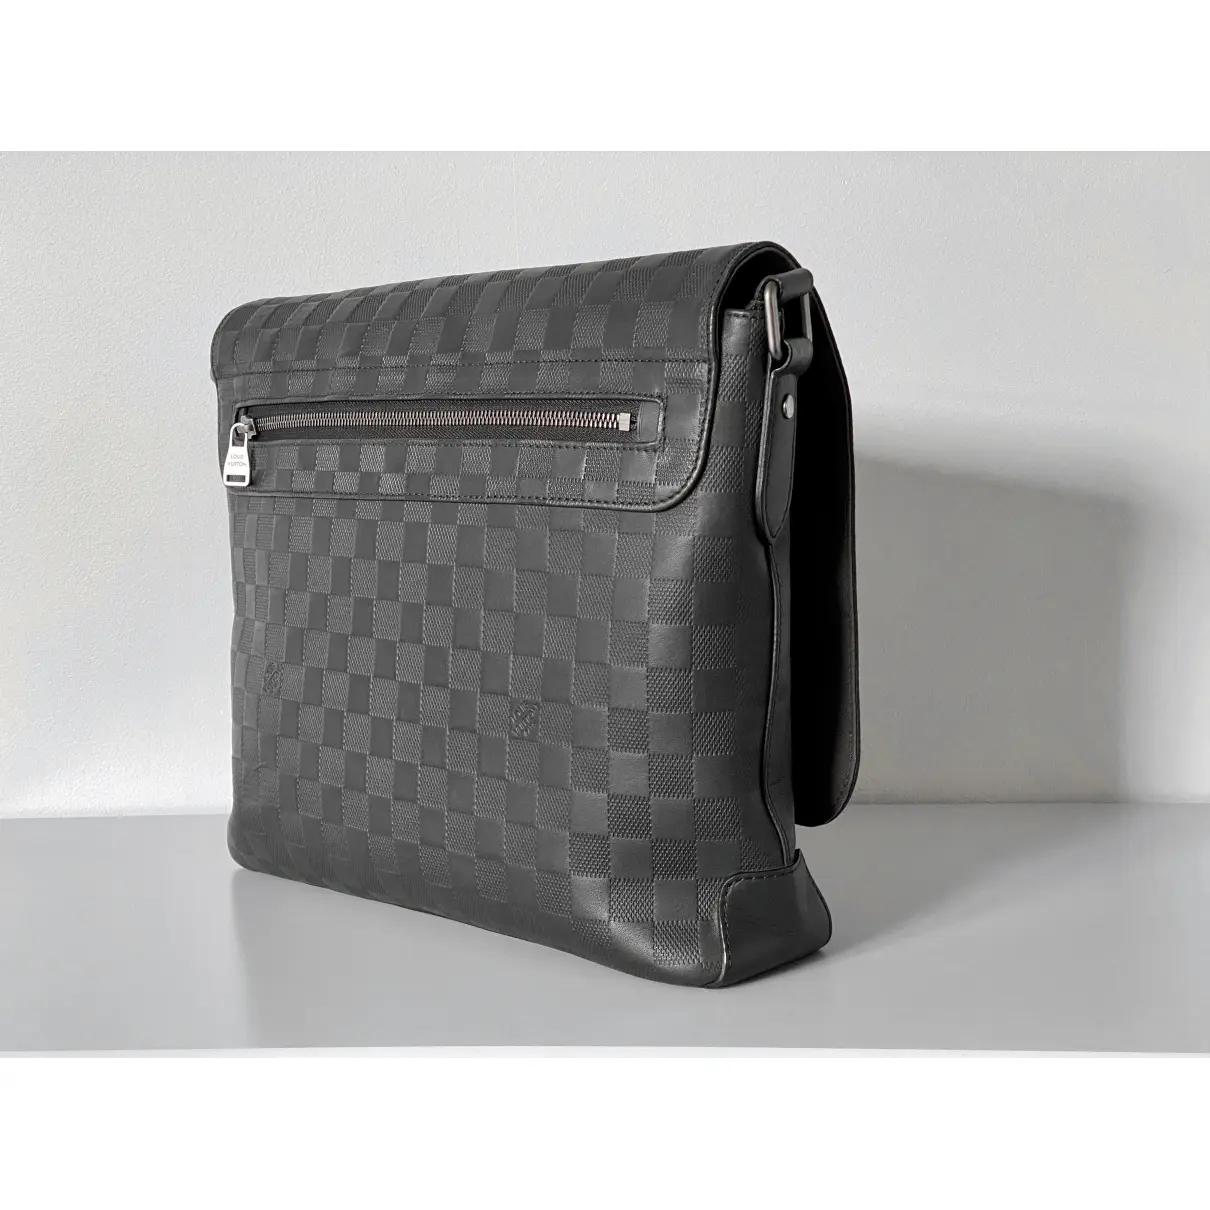 District leather bag Louis Vuitton